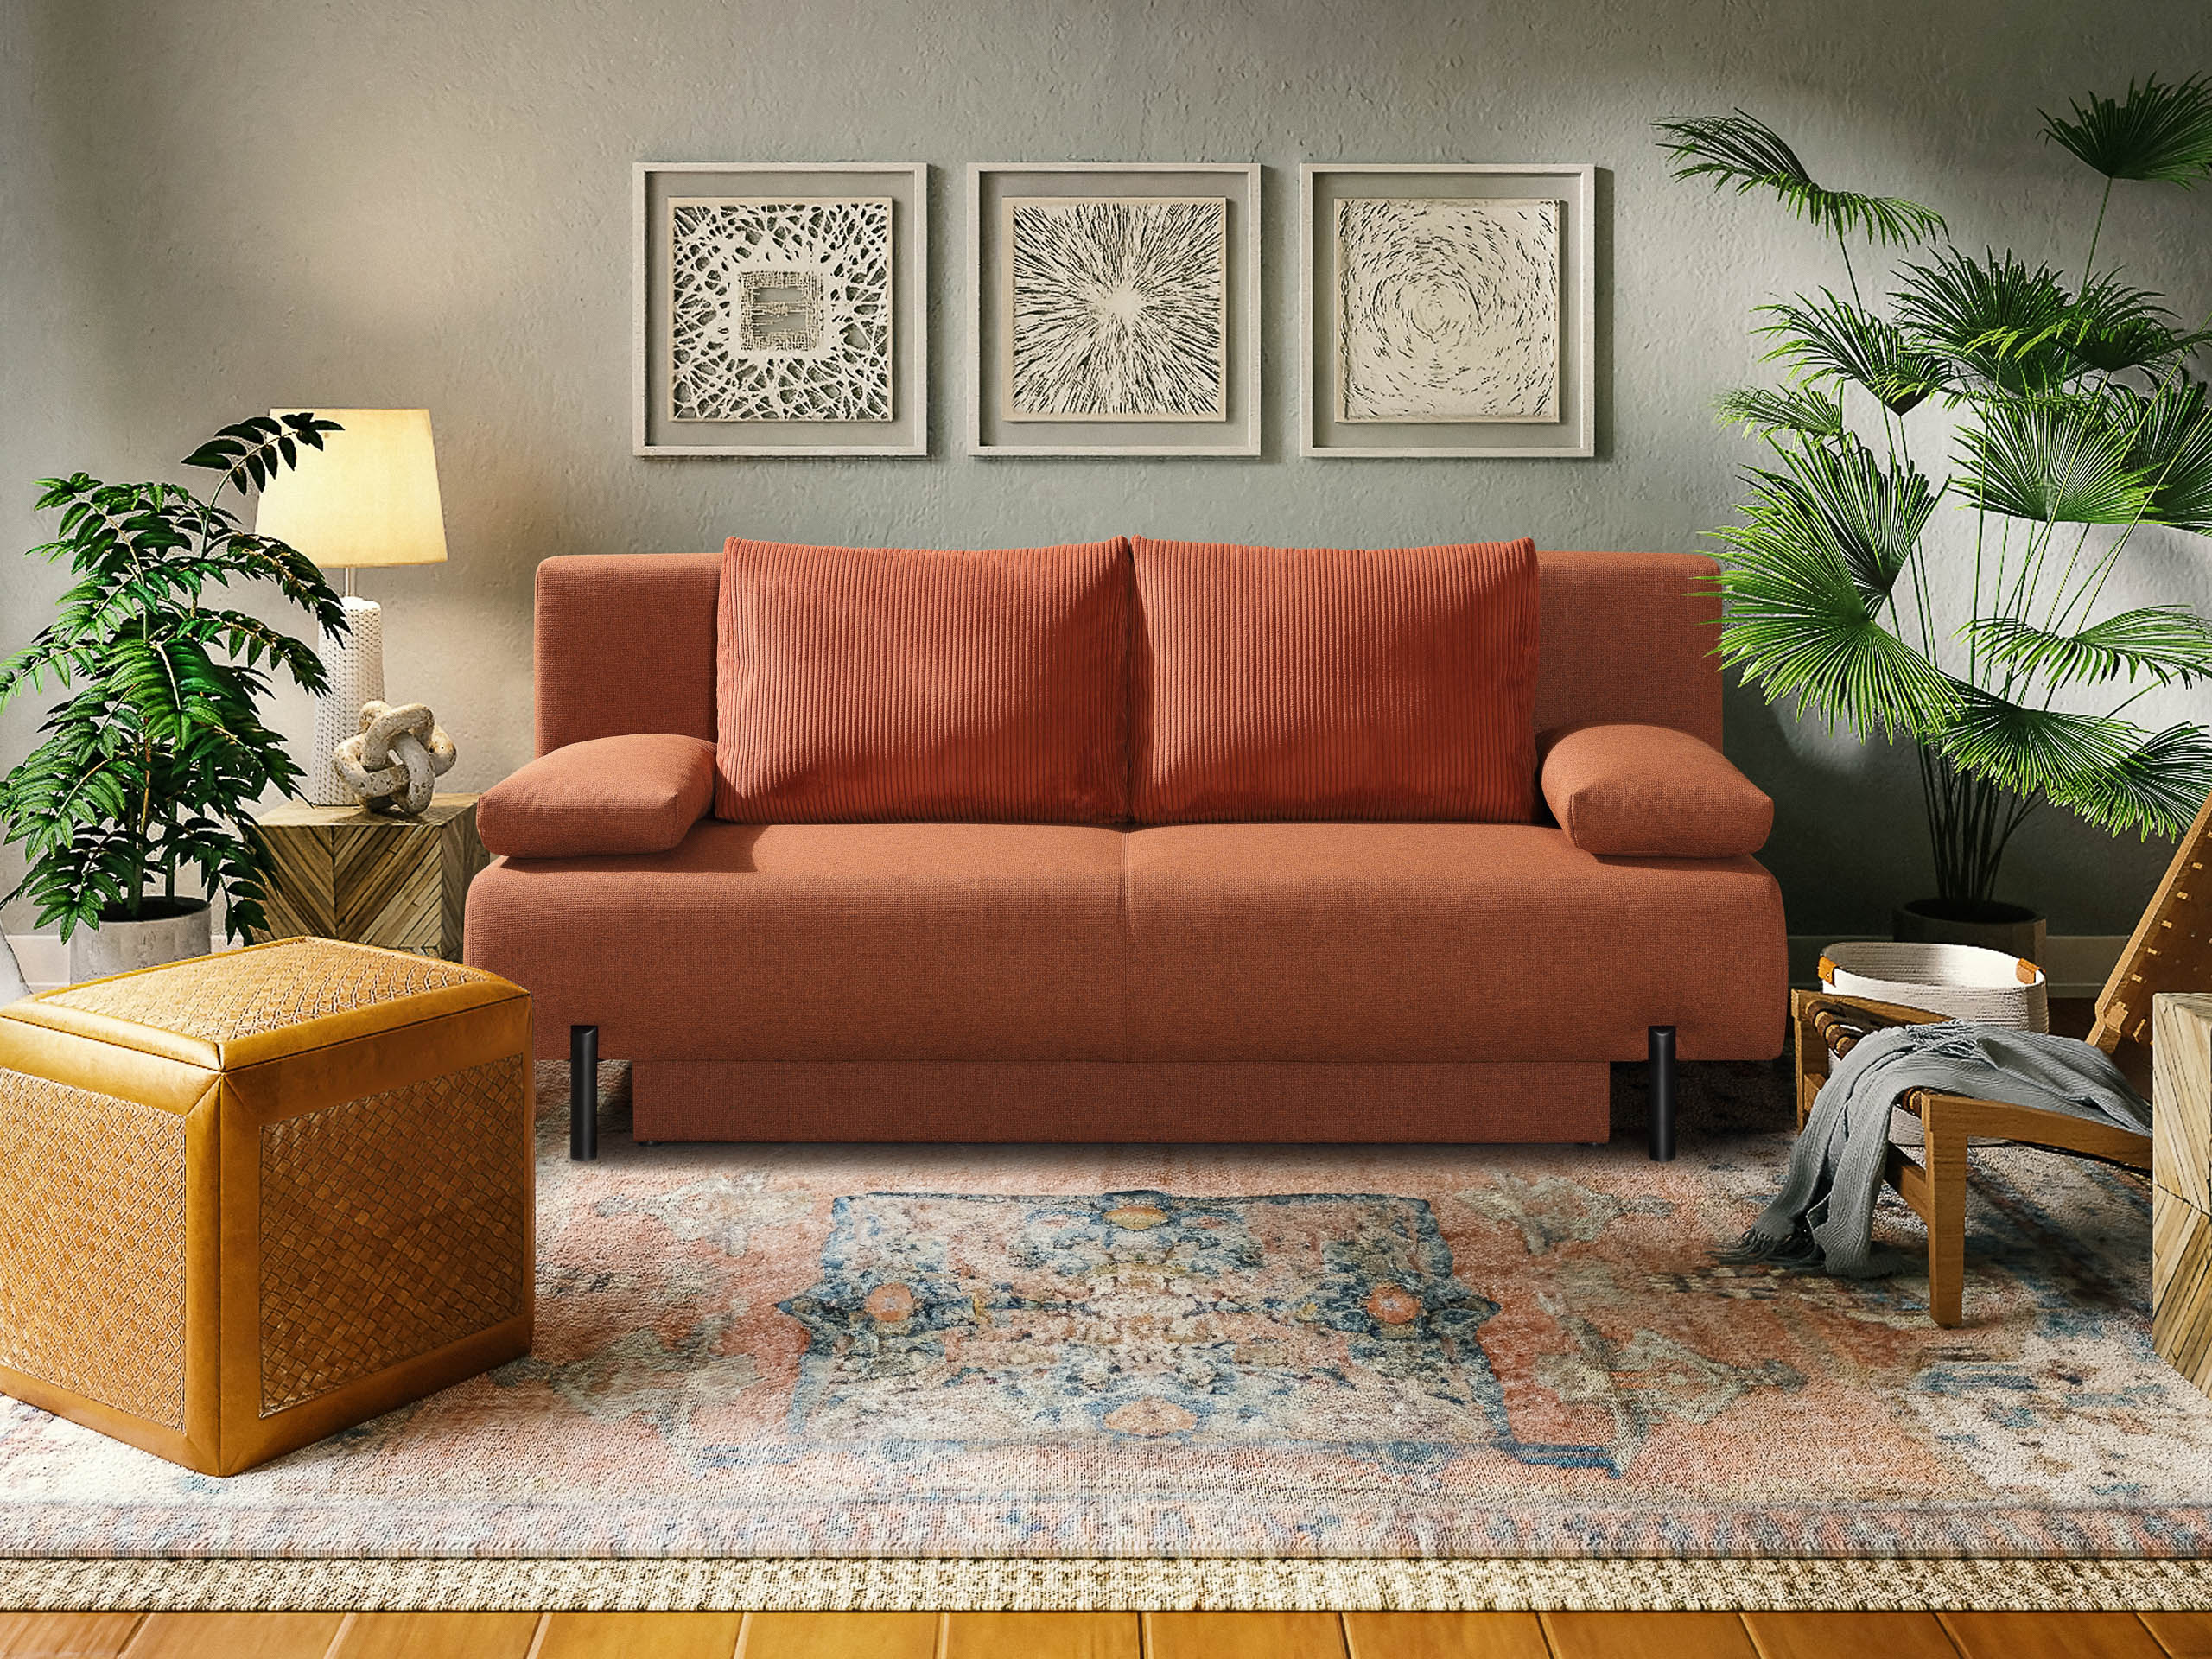 ein Kupferfarbenes Schlafsofa steht ander wand. Sofa hat zwei Cord Rückenkissen und zwei armlehnenkissen. Davor liegt ein oriental teppich.